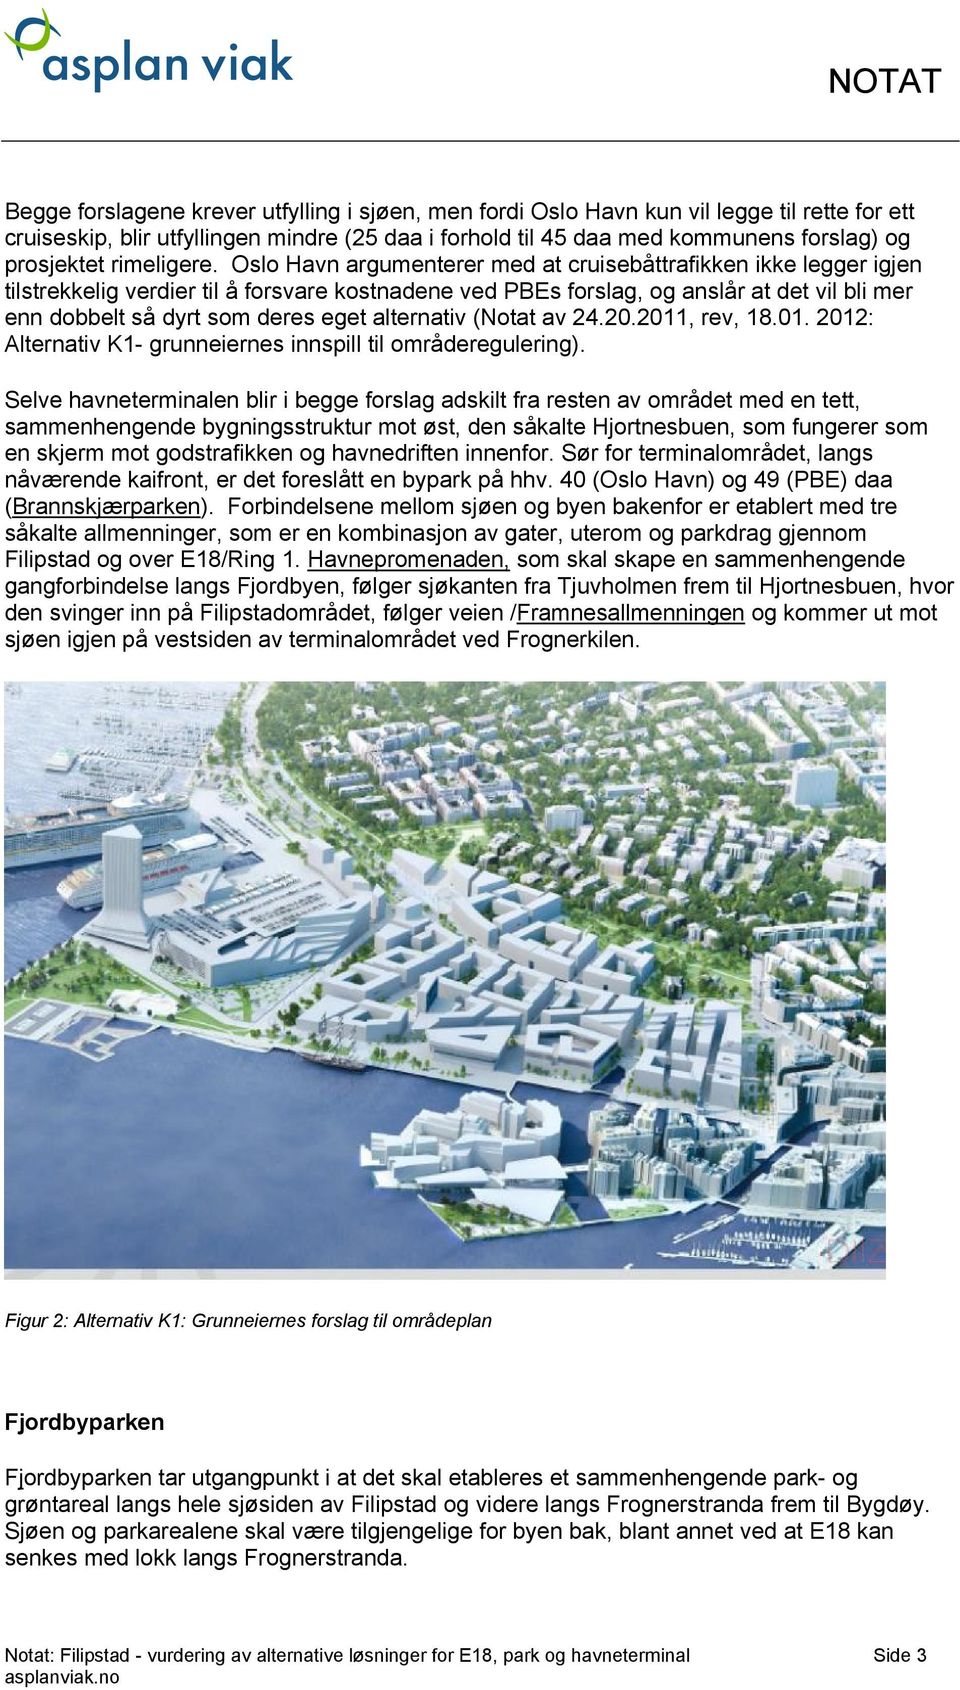 Oslo Havn argumenterer med at cruisebåttrafikken ikke legger igjen tilstrekkelig verdier til å forsvare kostnadene ved PBEs forslag, og anslår at det vil bli mer enn dobbelt så dyrt som deres eget